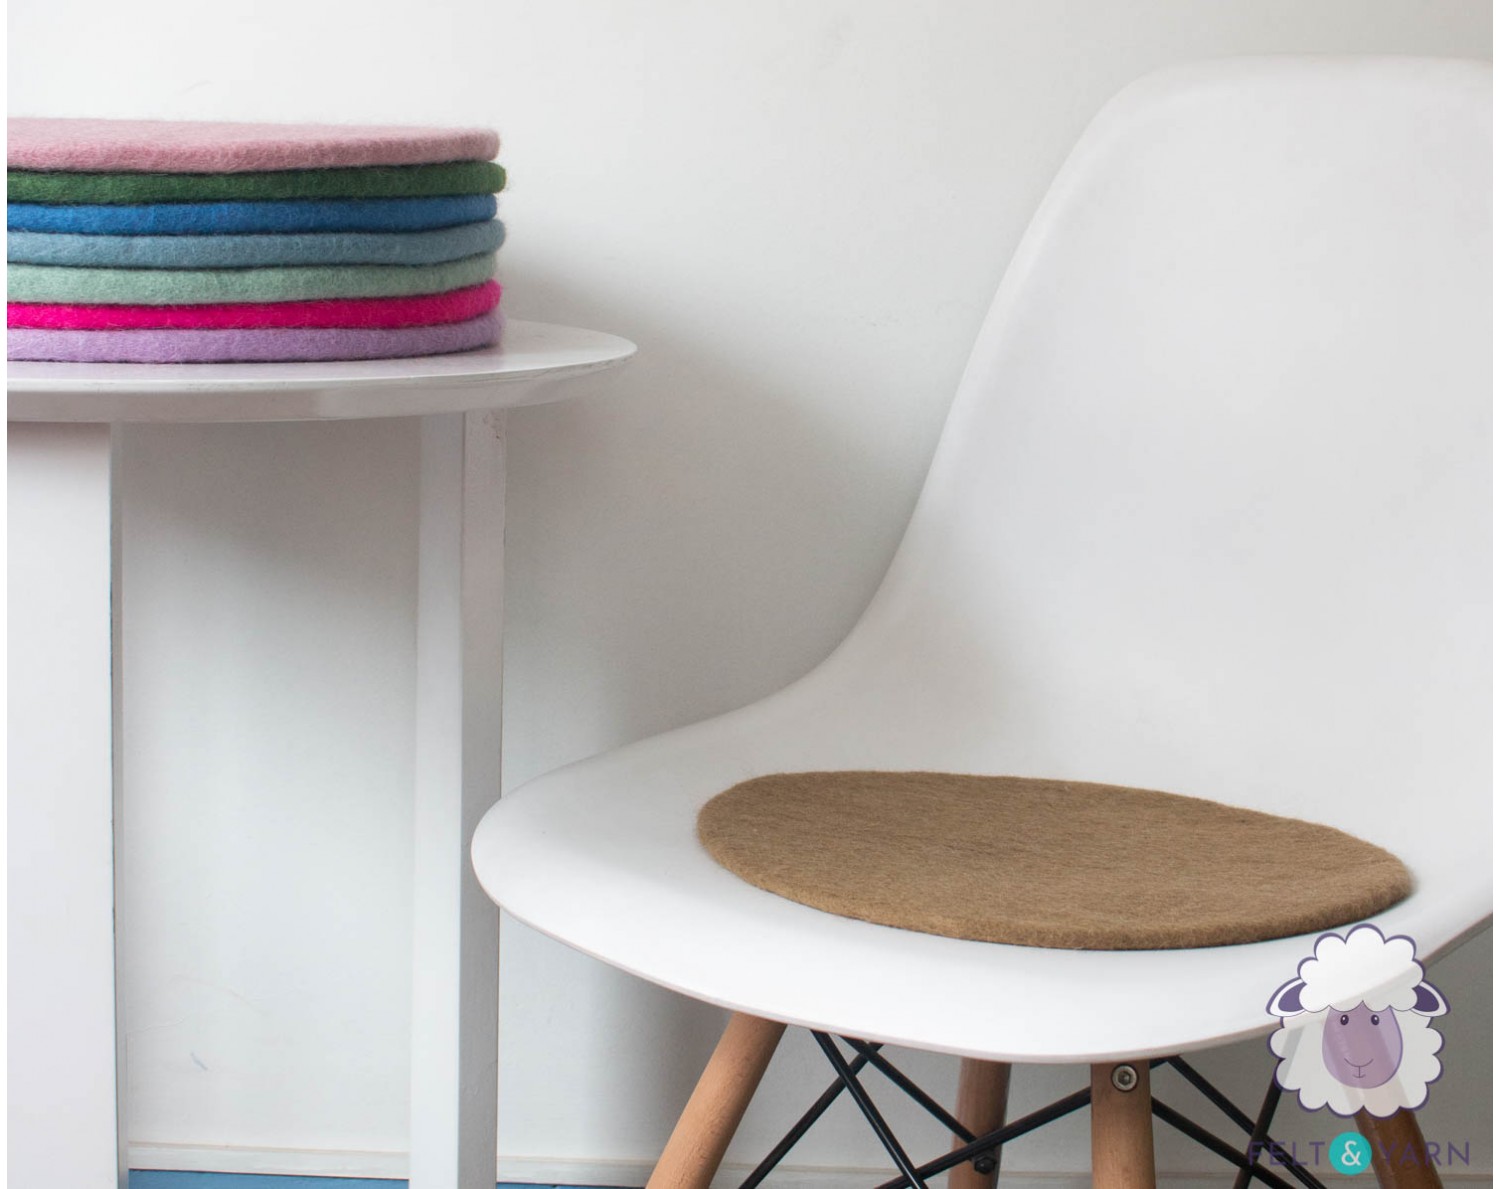 Buy Felt and yarn's Handmade plain chair and seat pad - Felt & Yarn